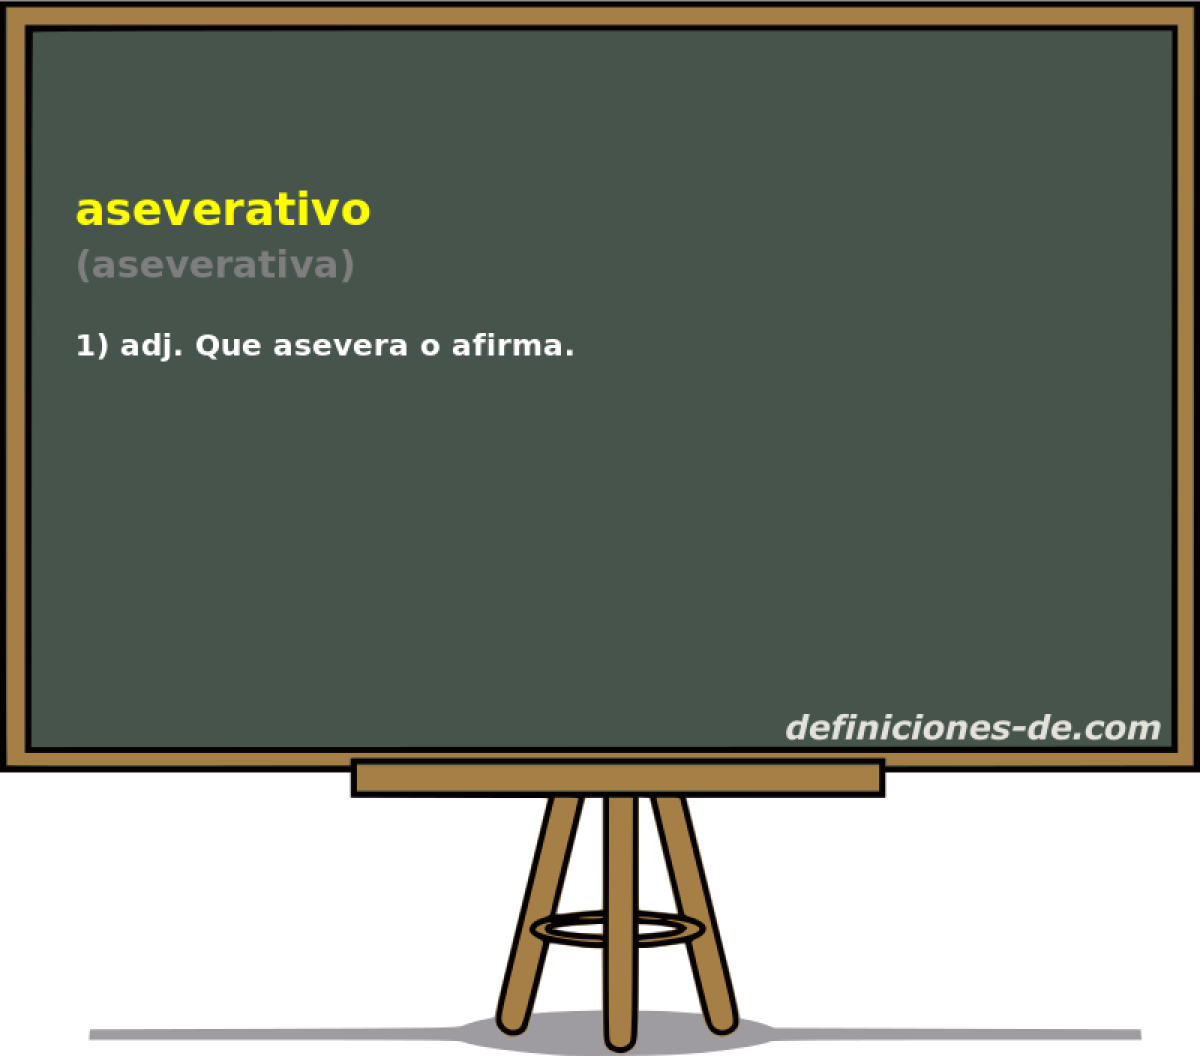 aseverativo (aseverativa)